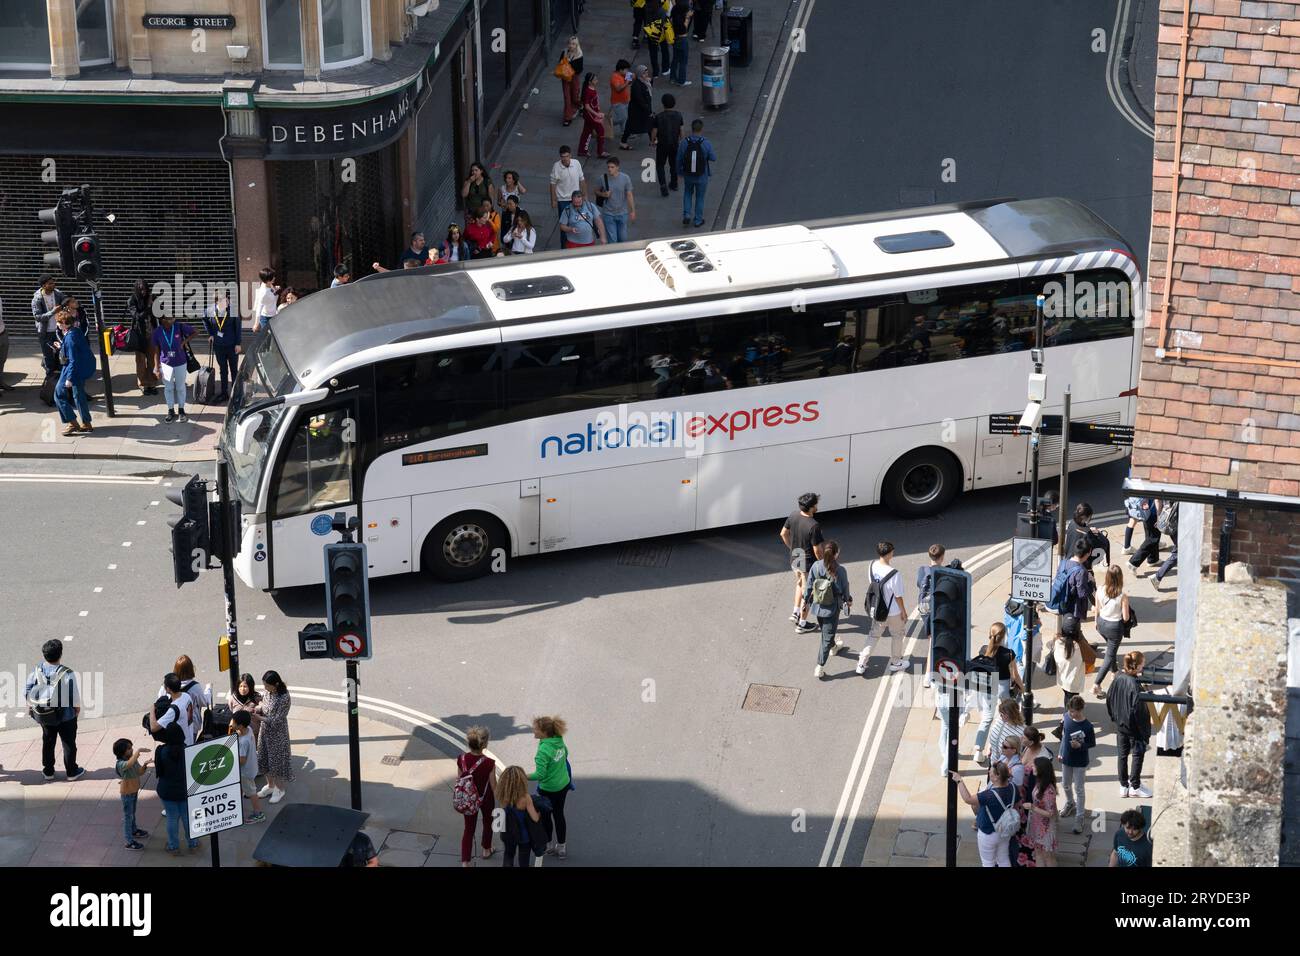 Vue aérienne d'un autocar National Express traversant une jonction à 4 voies dans le centre d'Oxford en provenance de Broad Street. ROYAUME-UNI. Concept : Voyage en autocar Banque D'Images